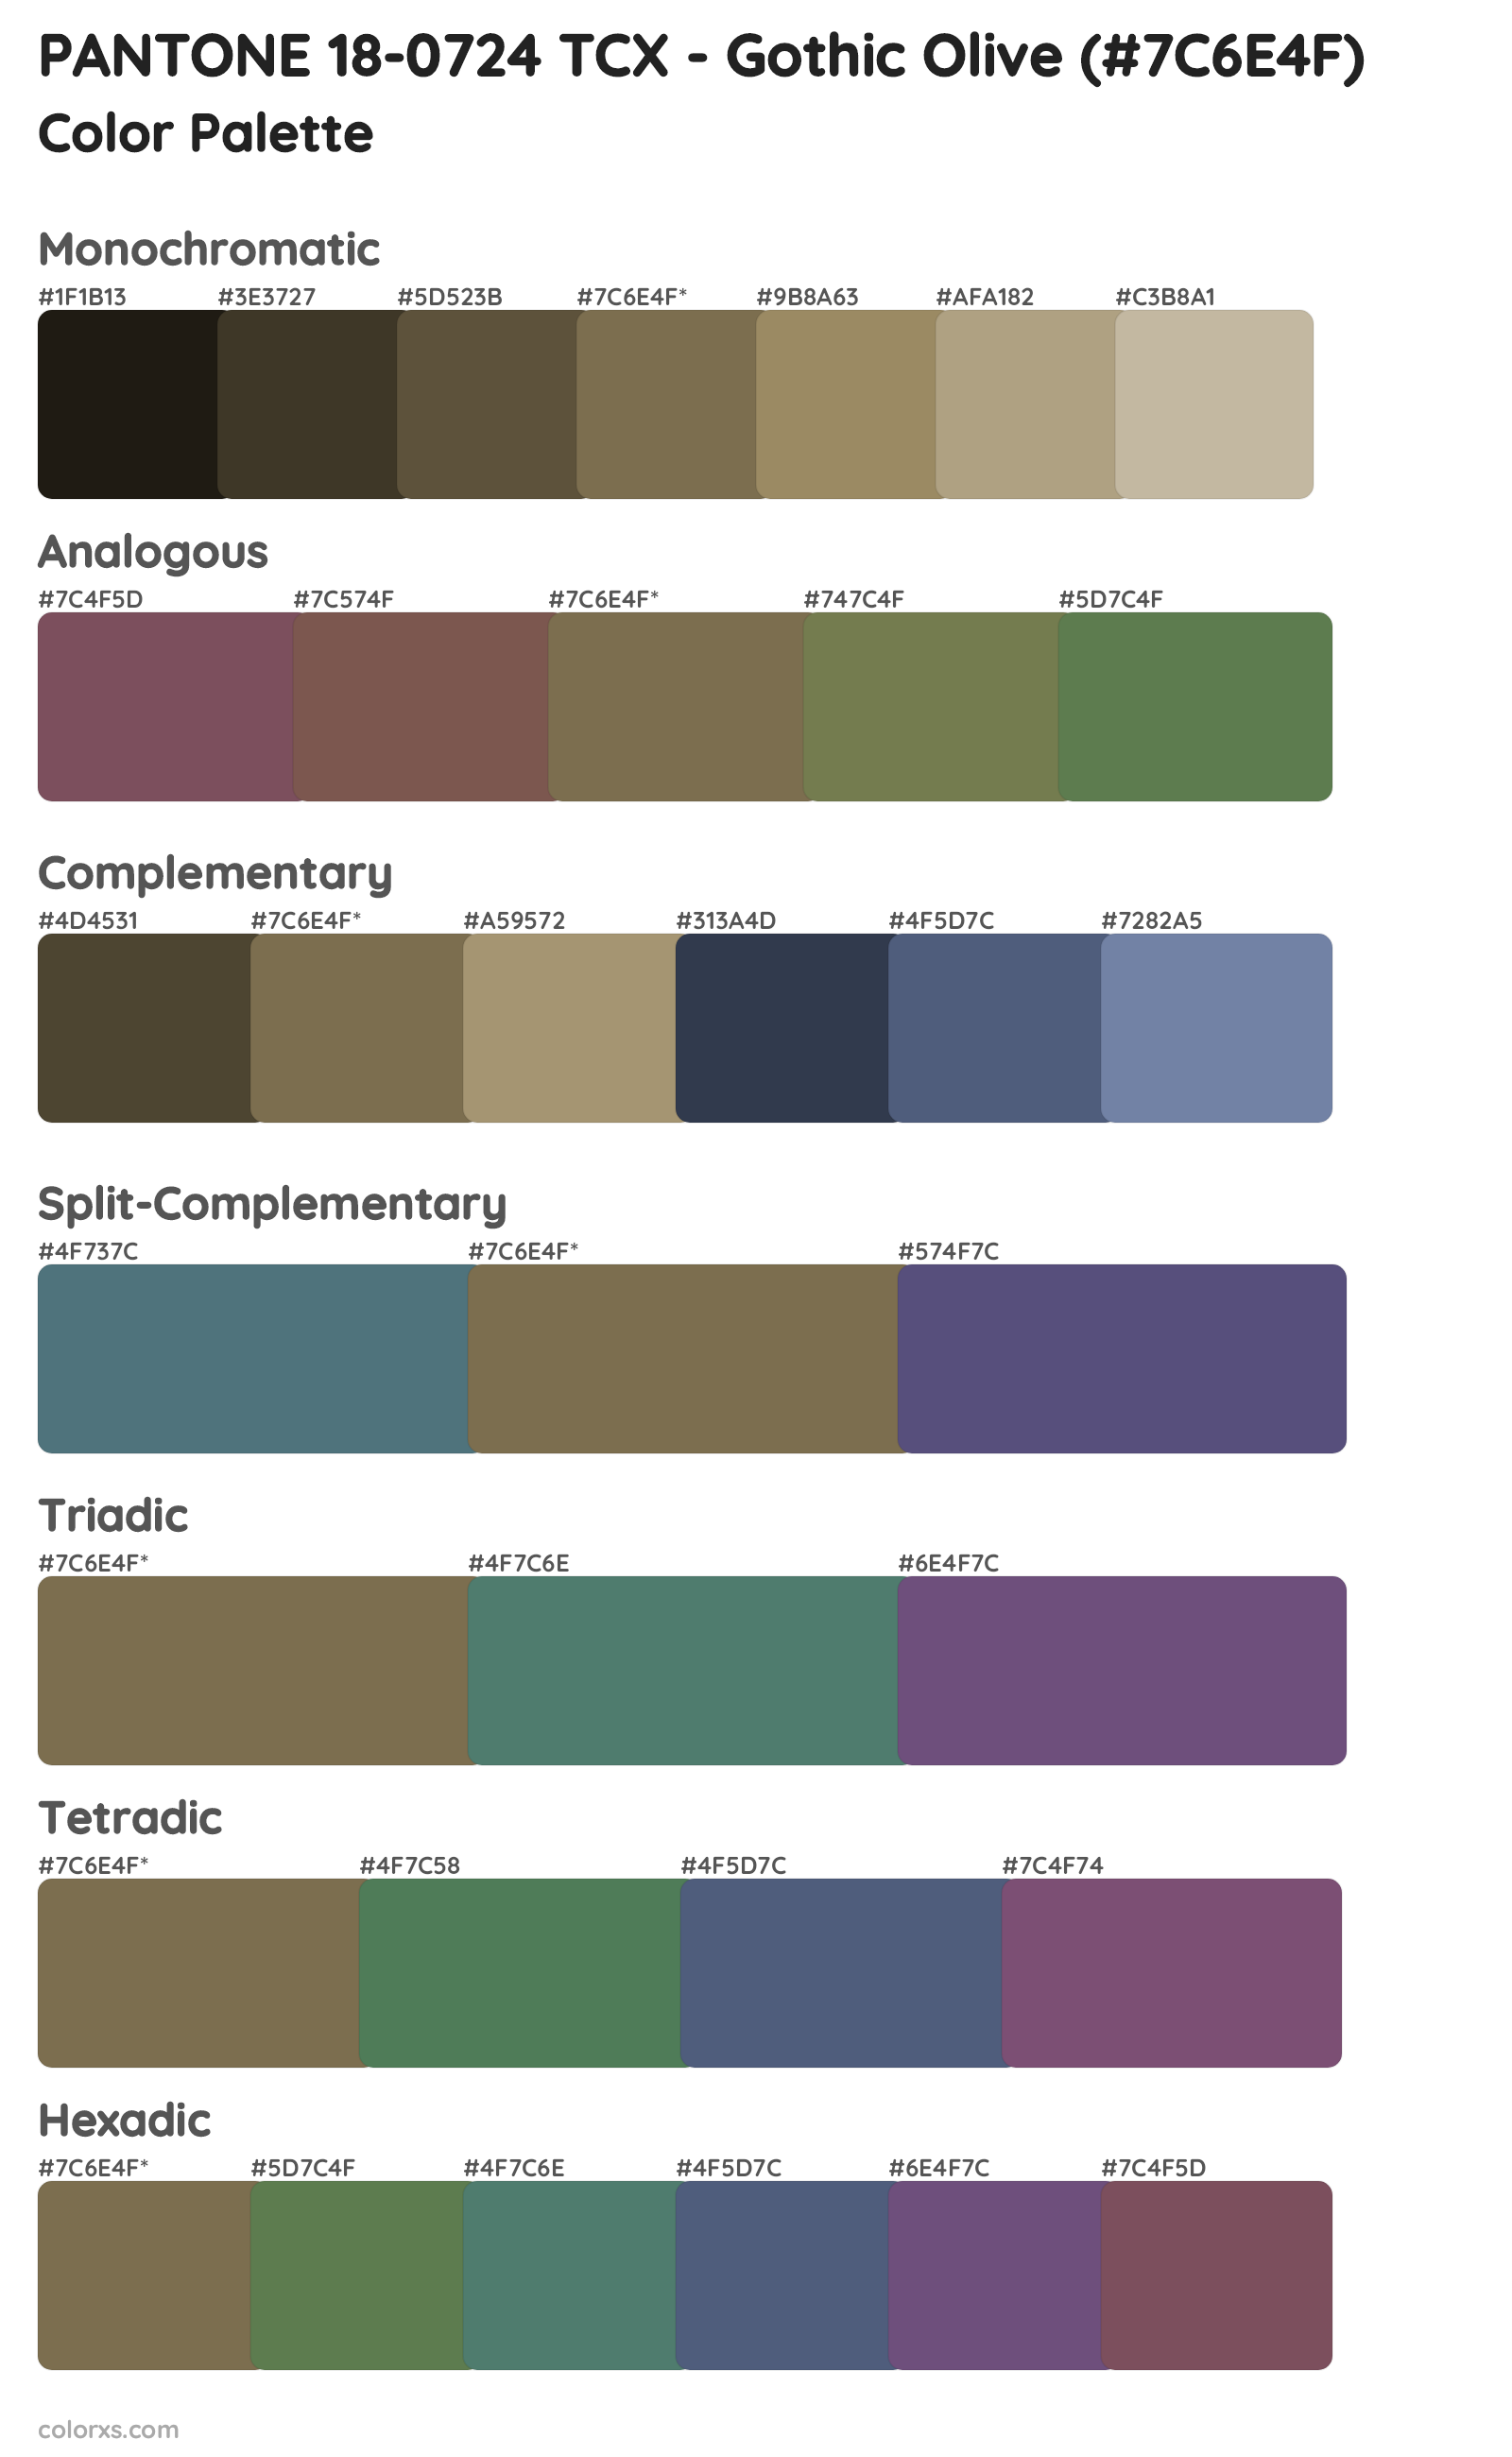 PANTONE 18-0724 TCX - Gothic Olive Color Scheme Palettes